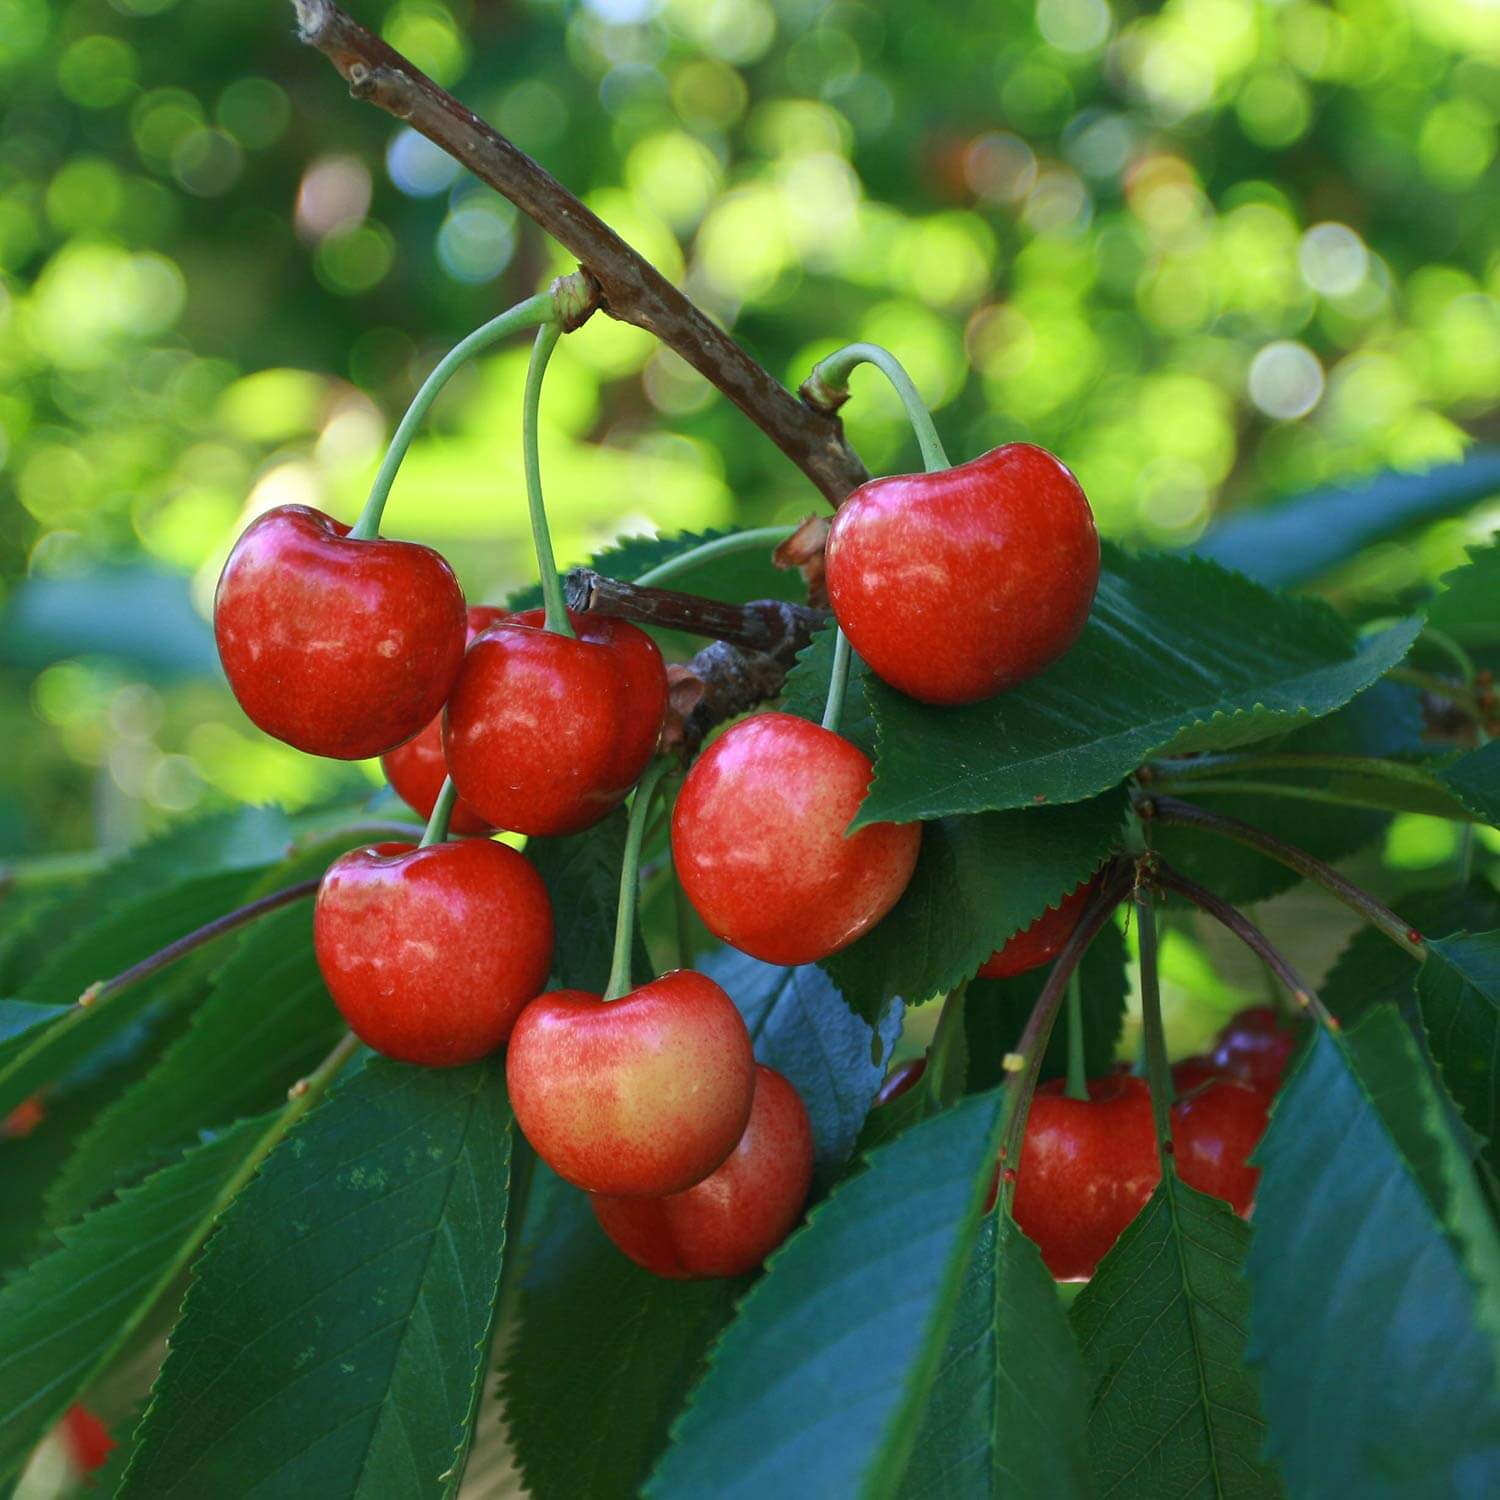 Prunus Avium 'Bing' or Bing Cherry Tree tree with bunch of ripe red cherries